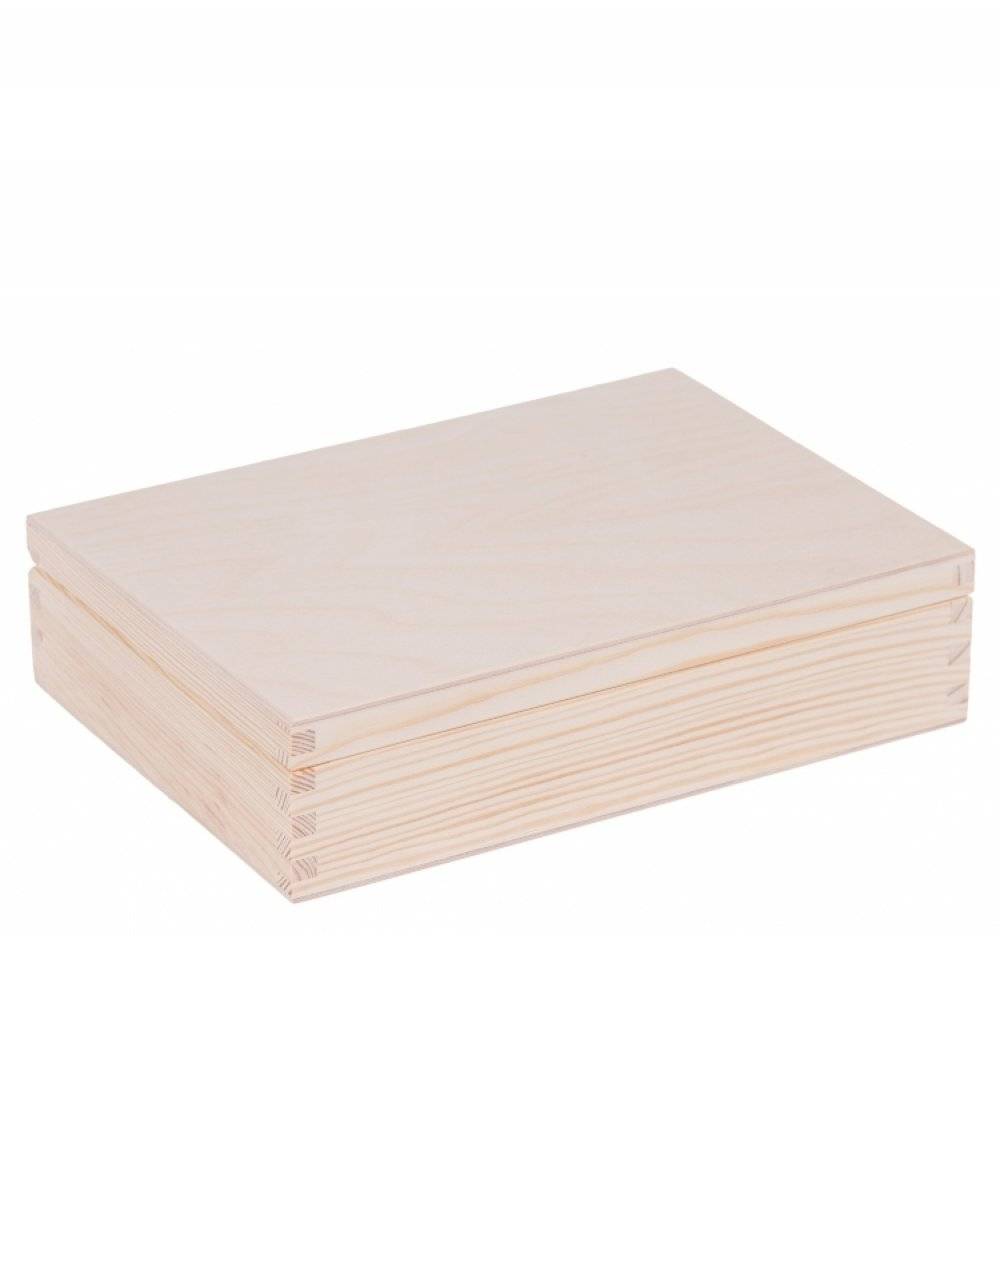 Přírodní dřevěná krabička 24x17x5,5 cm